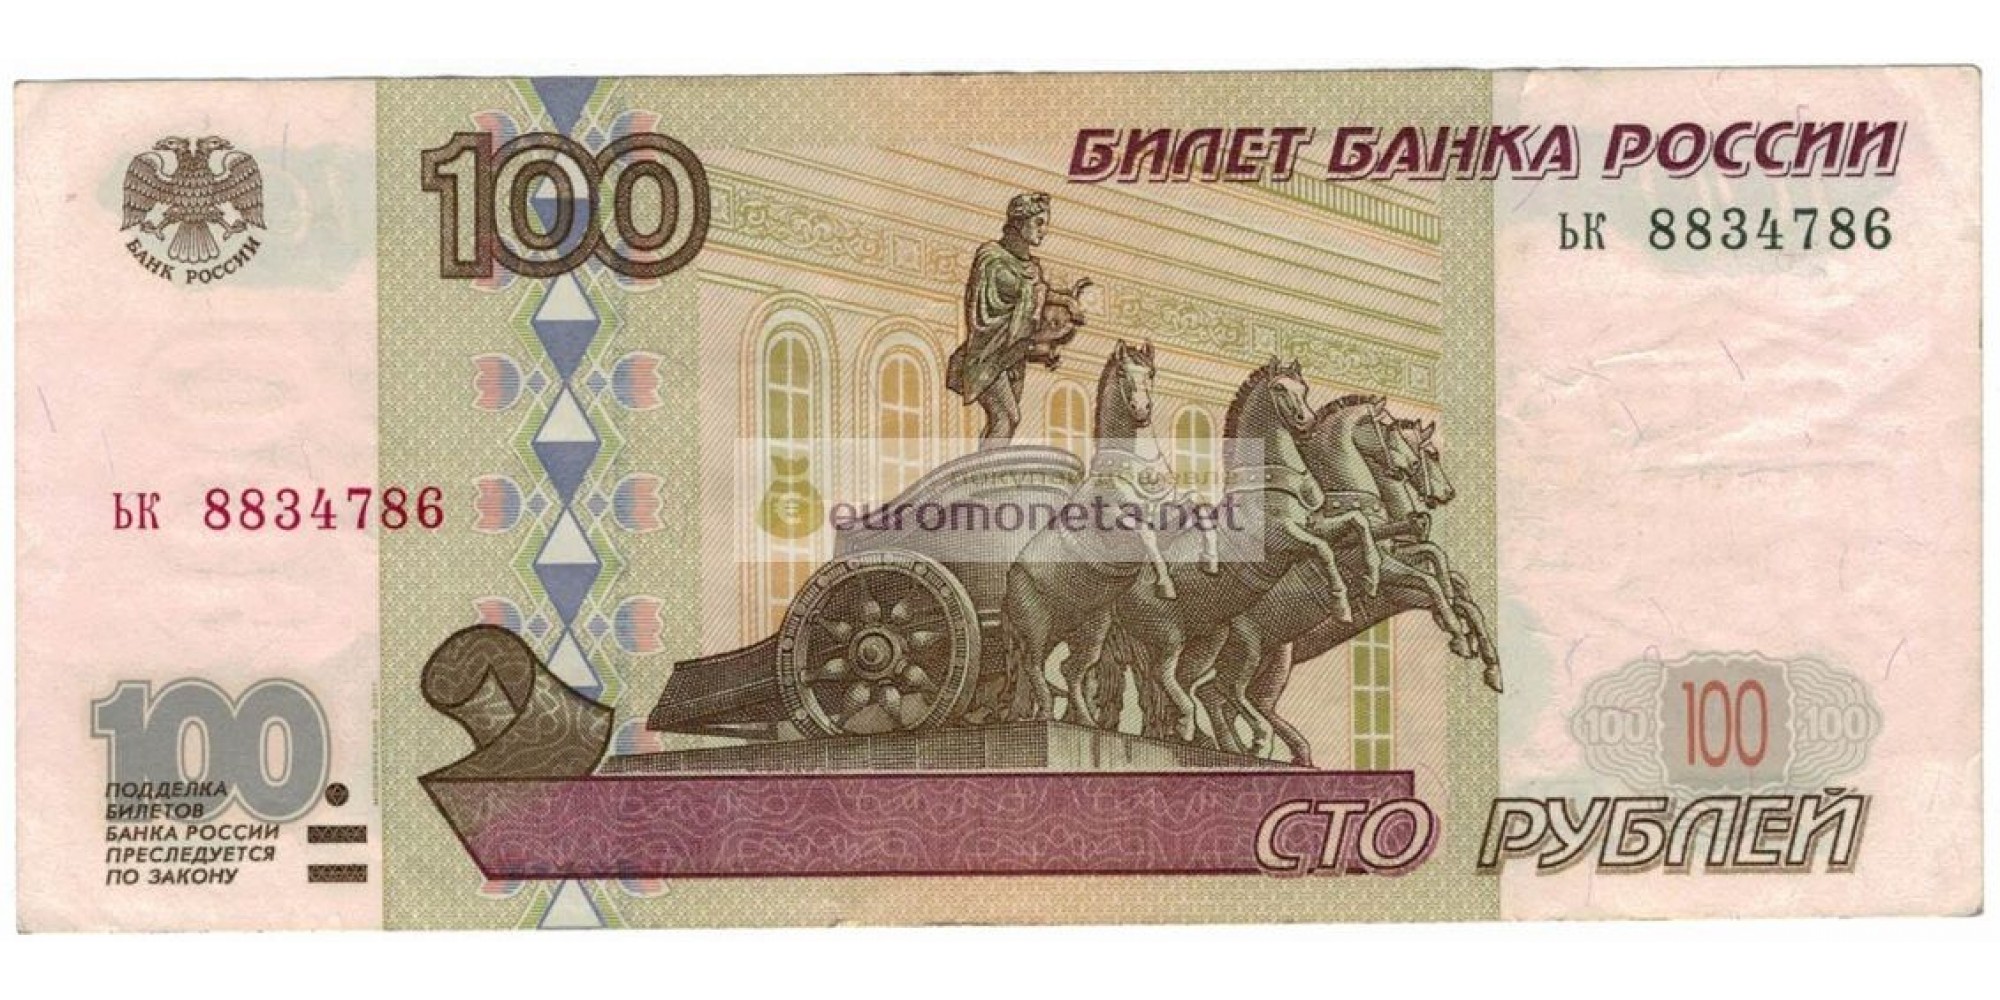 Россия 100 рублей 1997 год модификация 2001 год серия ьк 8834786